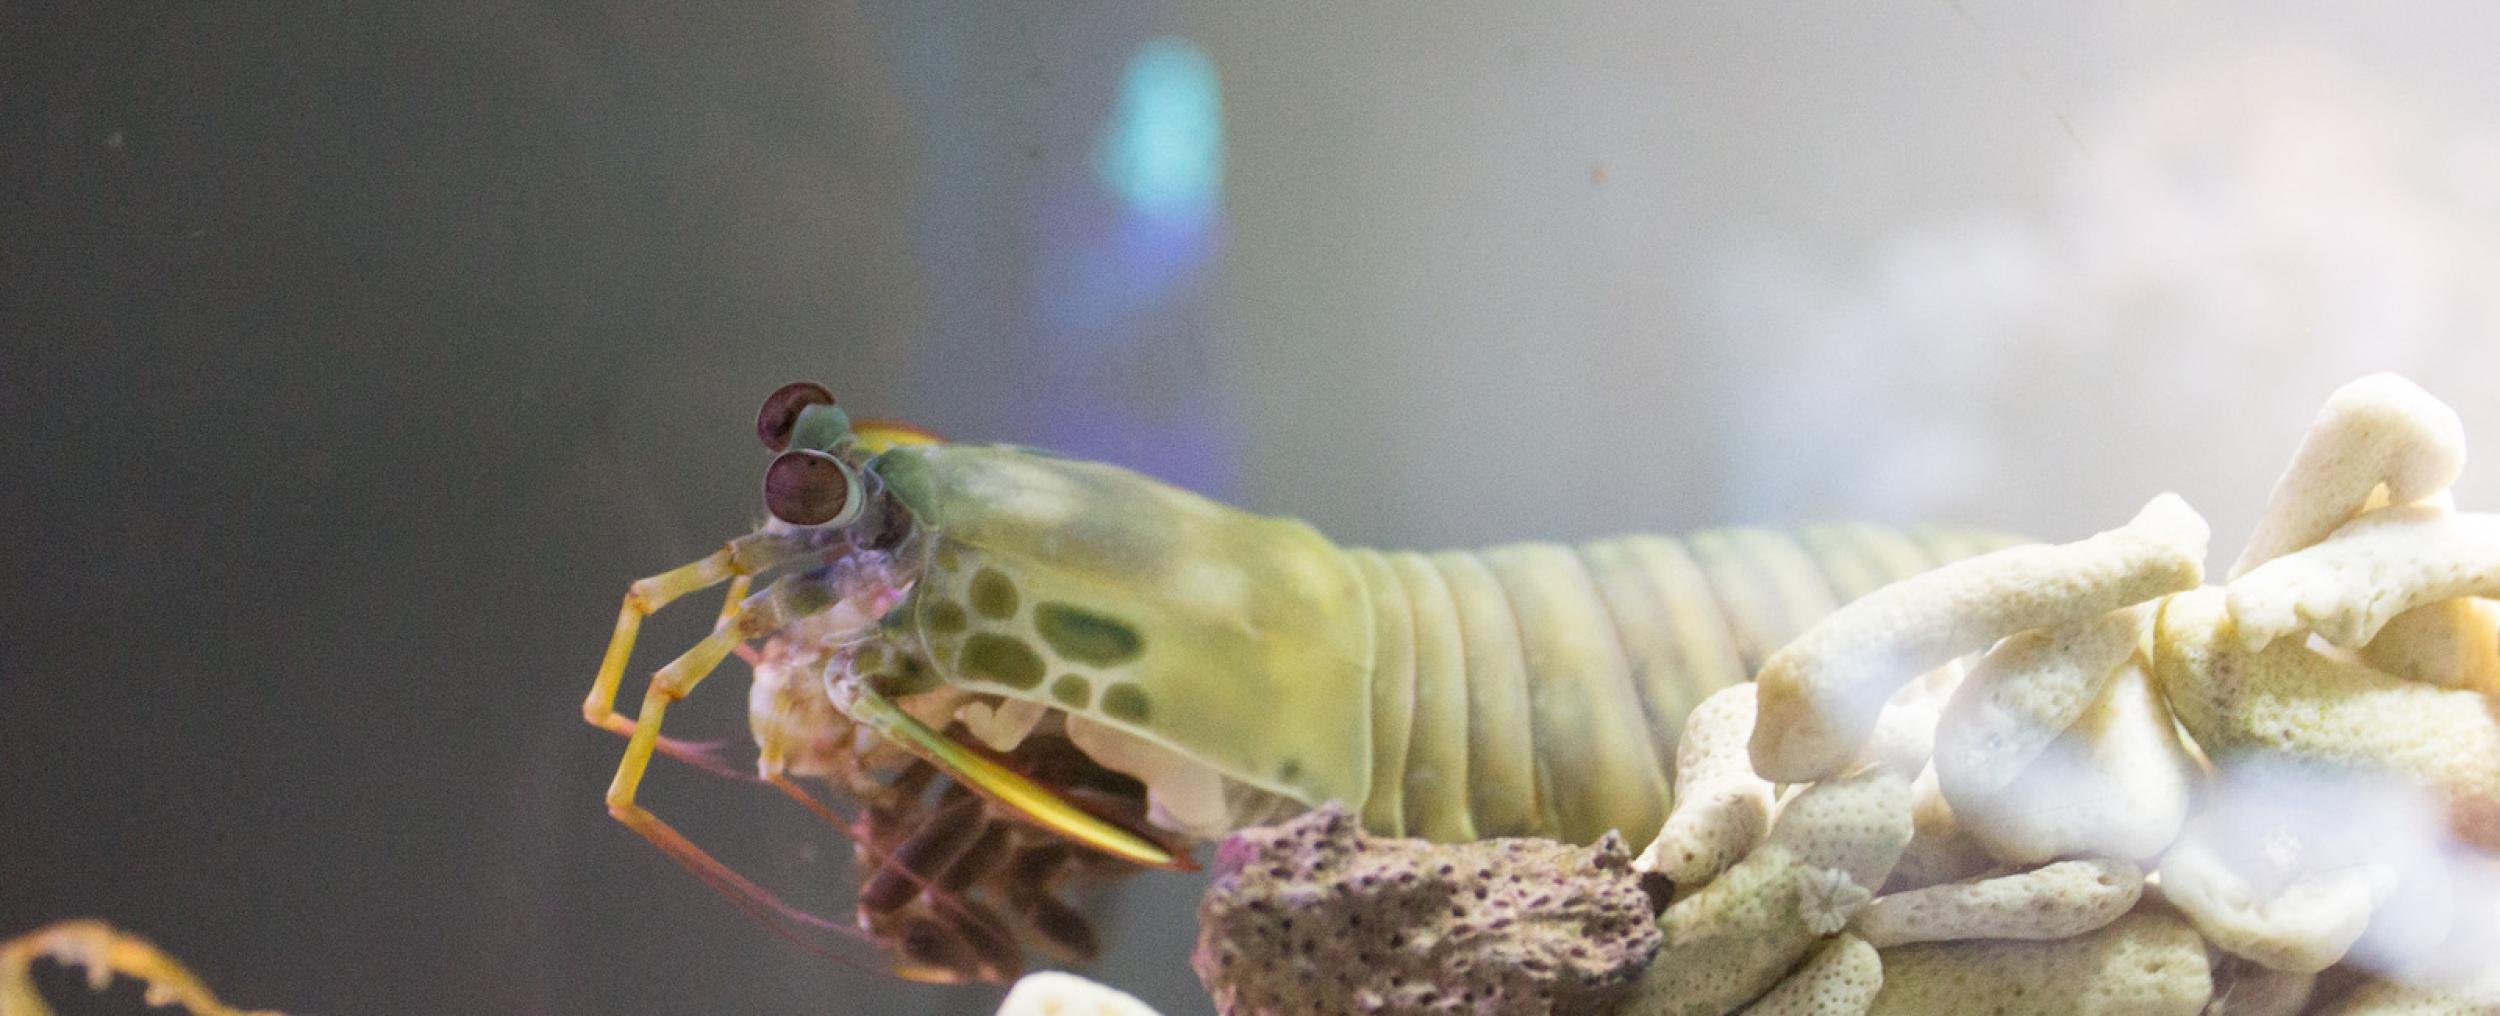 Mantis shrimp can live in aquariums